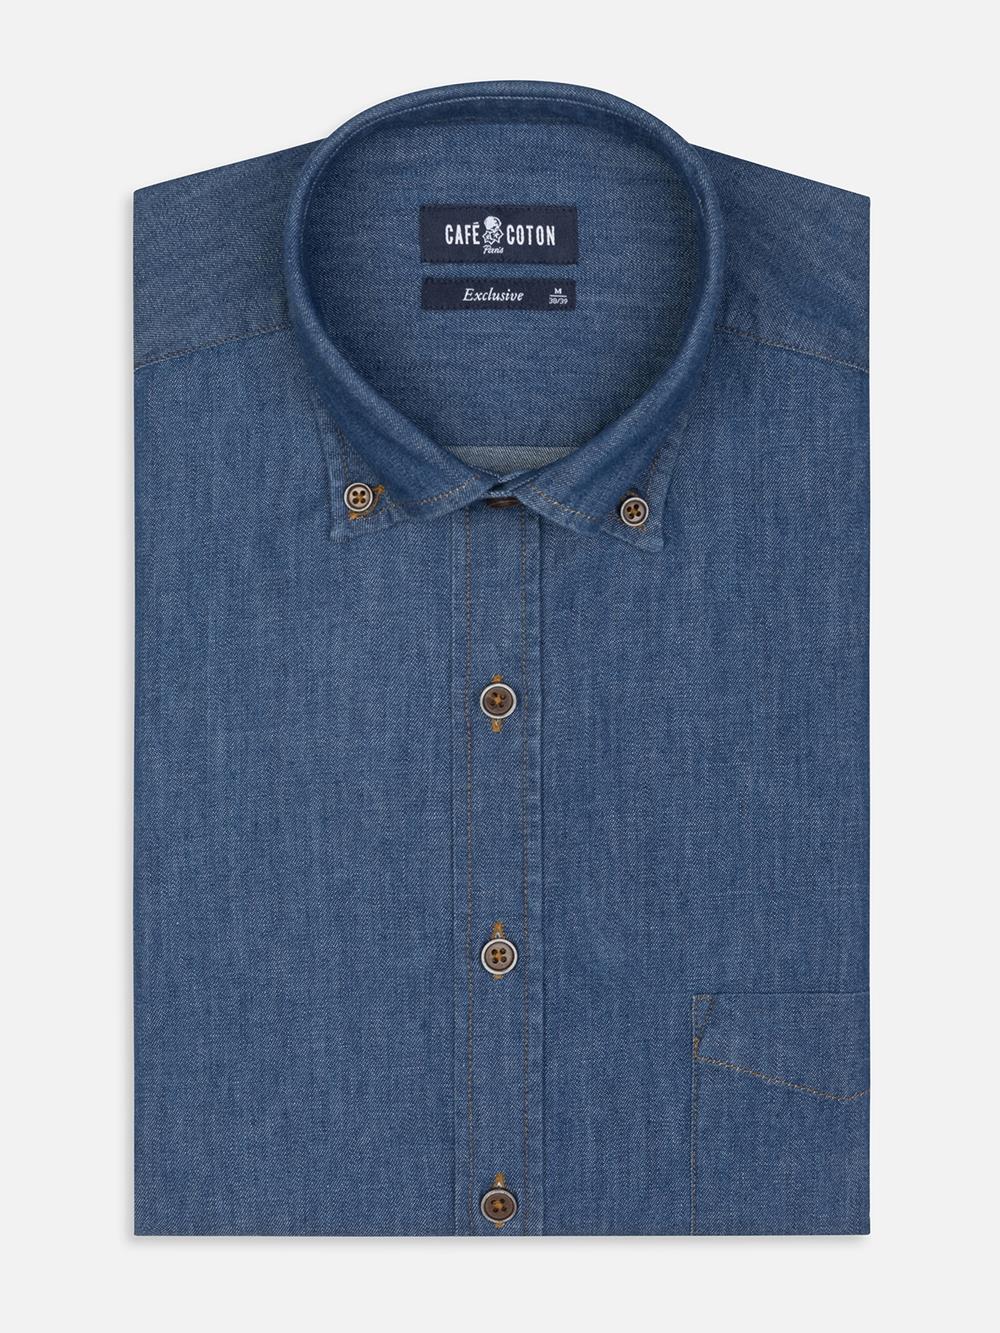  Hemd Malo aus Denim - Buttondown Kragen